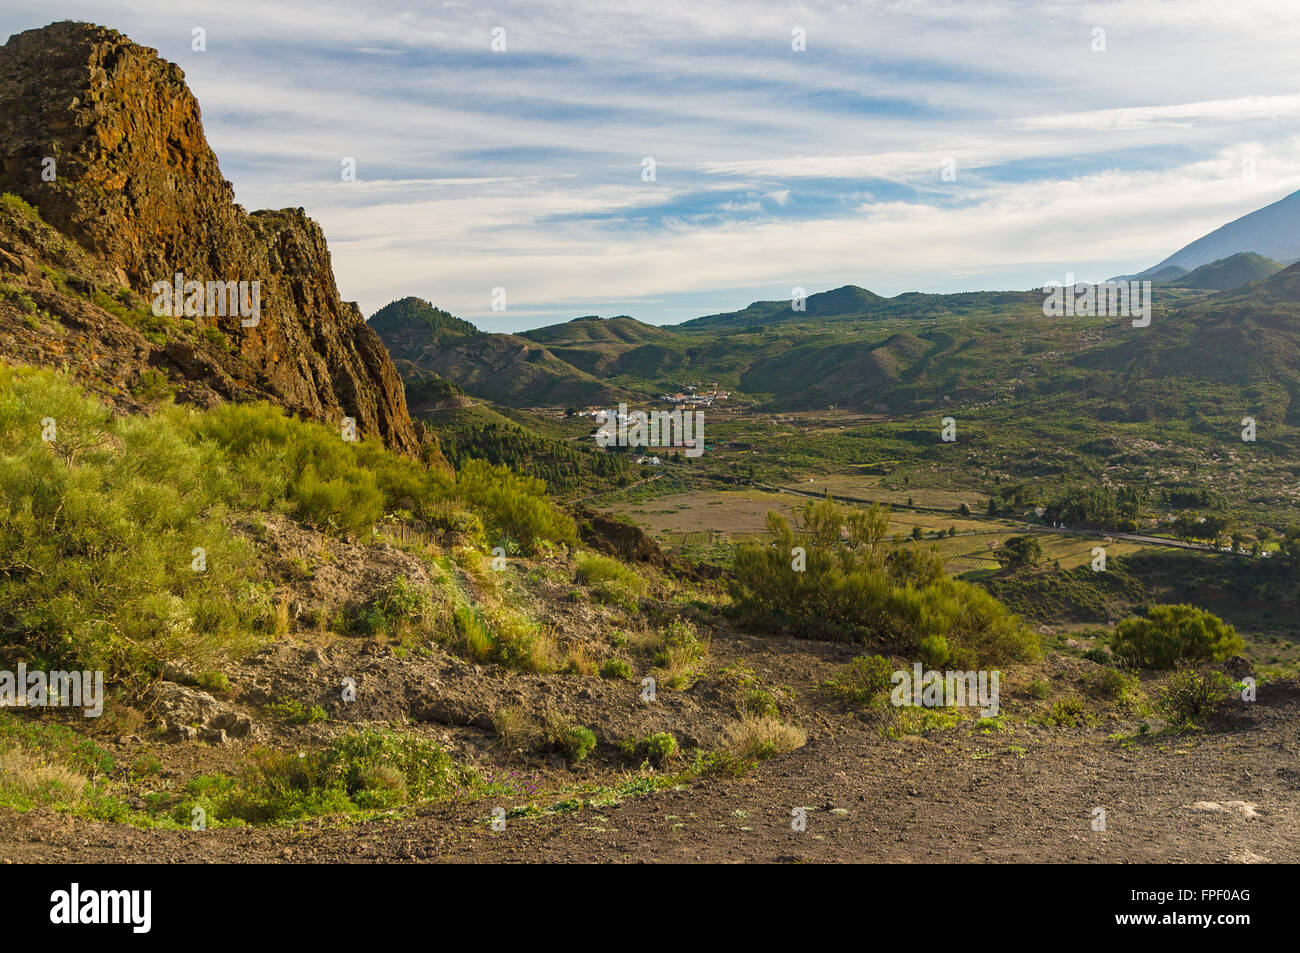 View on Valle de Ariba, Tenerife, Spain Stock Photo